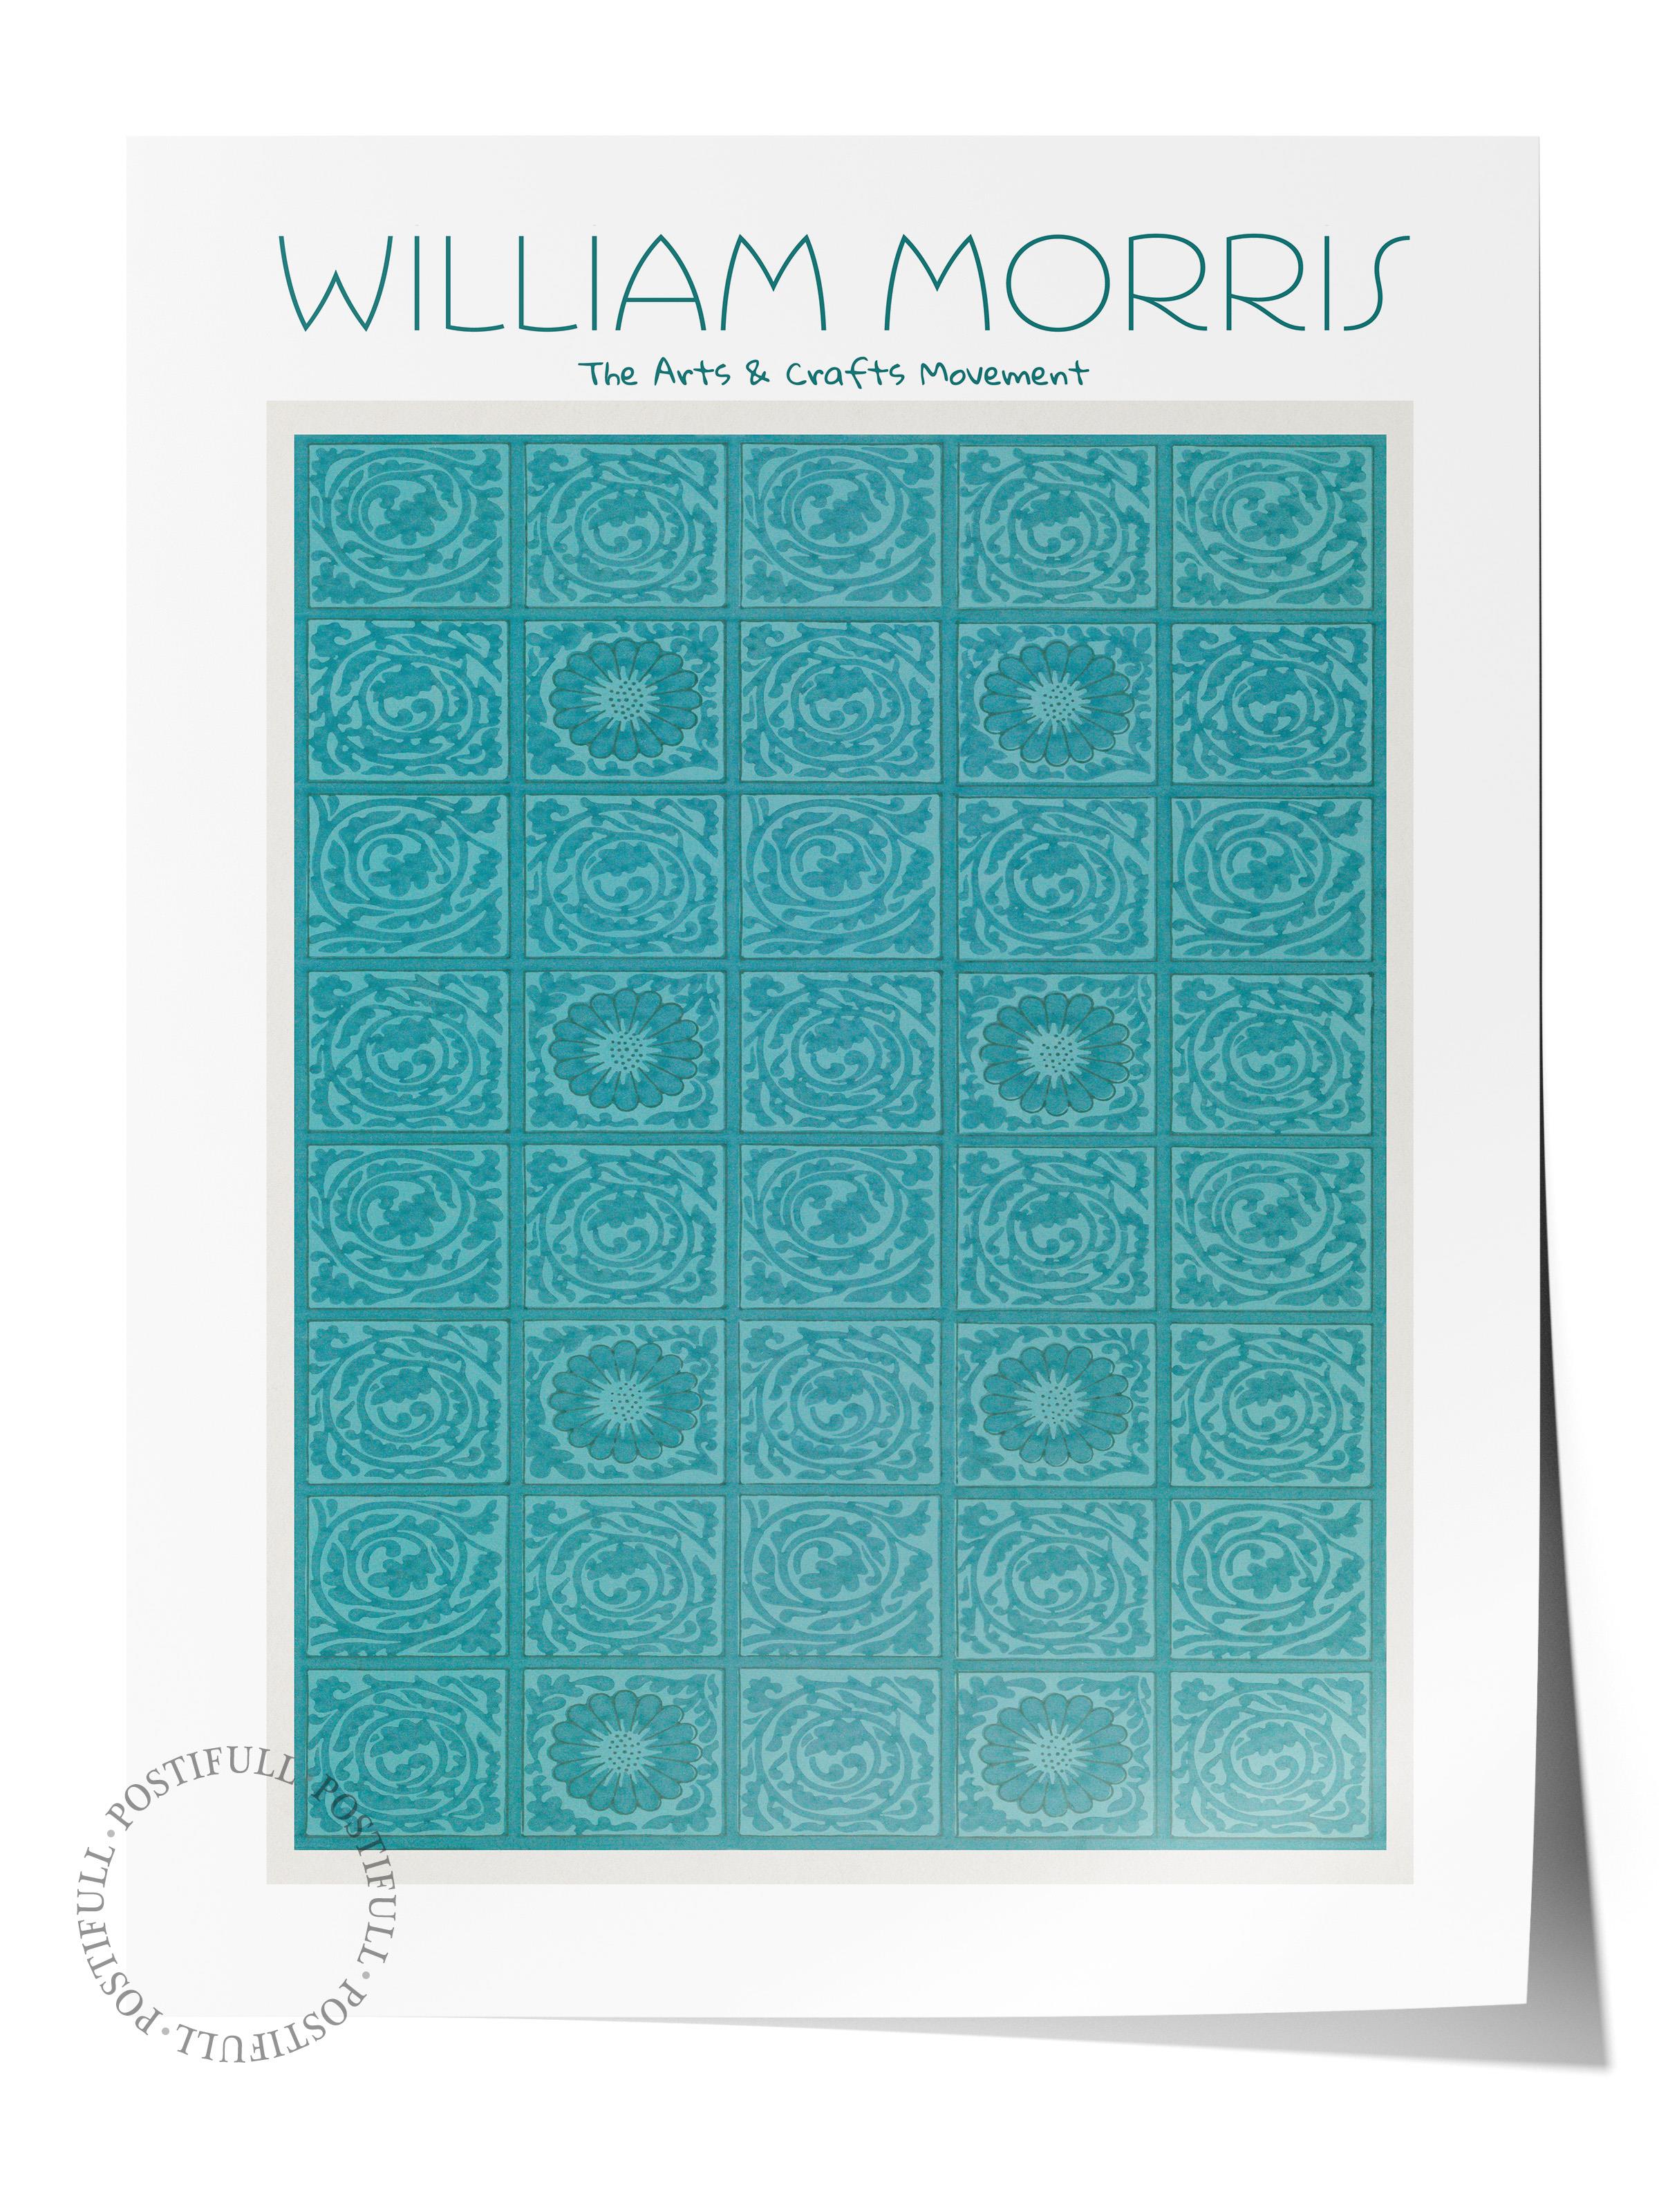 William Morris Poster - William Morris Tasarımları - Sanat Serisi - Turkuaz Çerçevesiz Duvar Tablosu - Parlak ve Kalın Fine Art Kağıt Poster